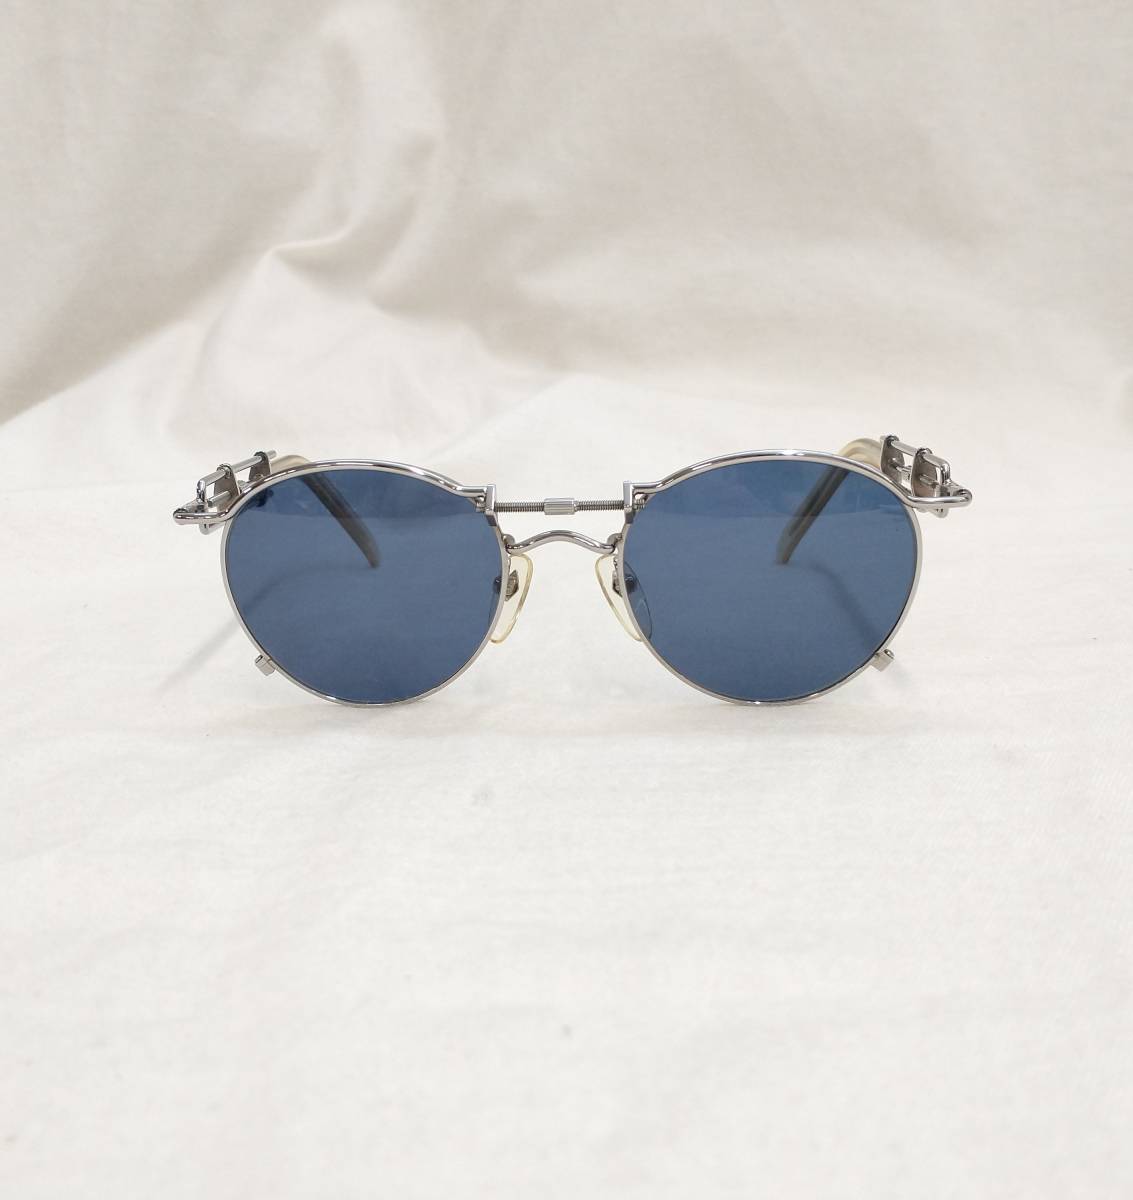 Jean Paul GAULTIER Jean-Paul Gaultier солнцезащитные очки синий голубой серебряный 56-0174 сделано в Японии магазин квитанция возможно 